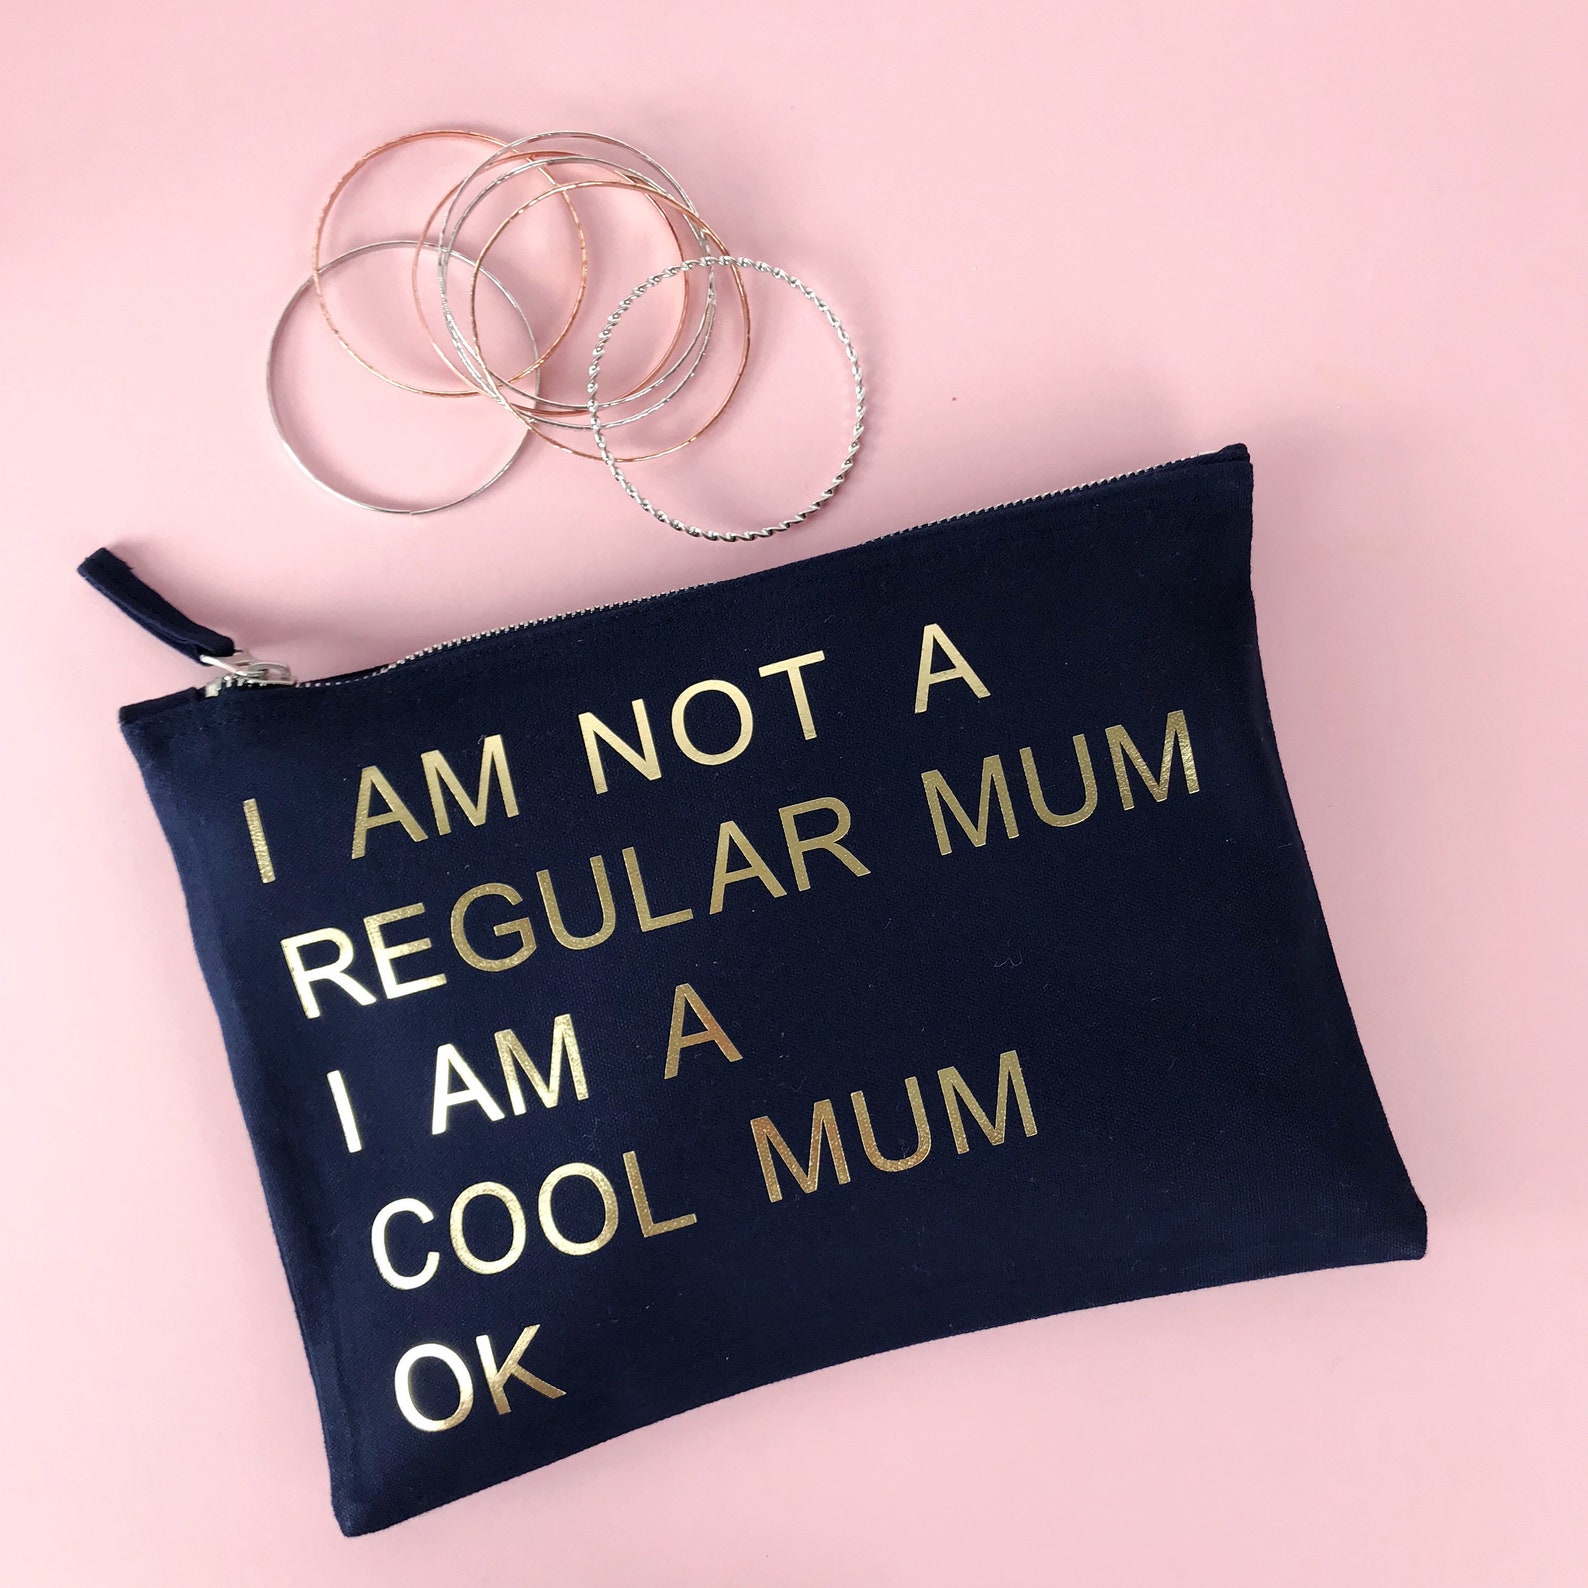 I say mum what. My mum made it сумка. My mum made it Bag. My mum made it сумка купить. My mum made it одежда сумка купить.